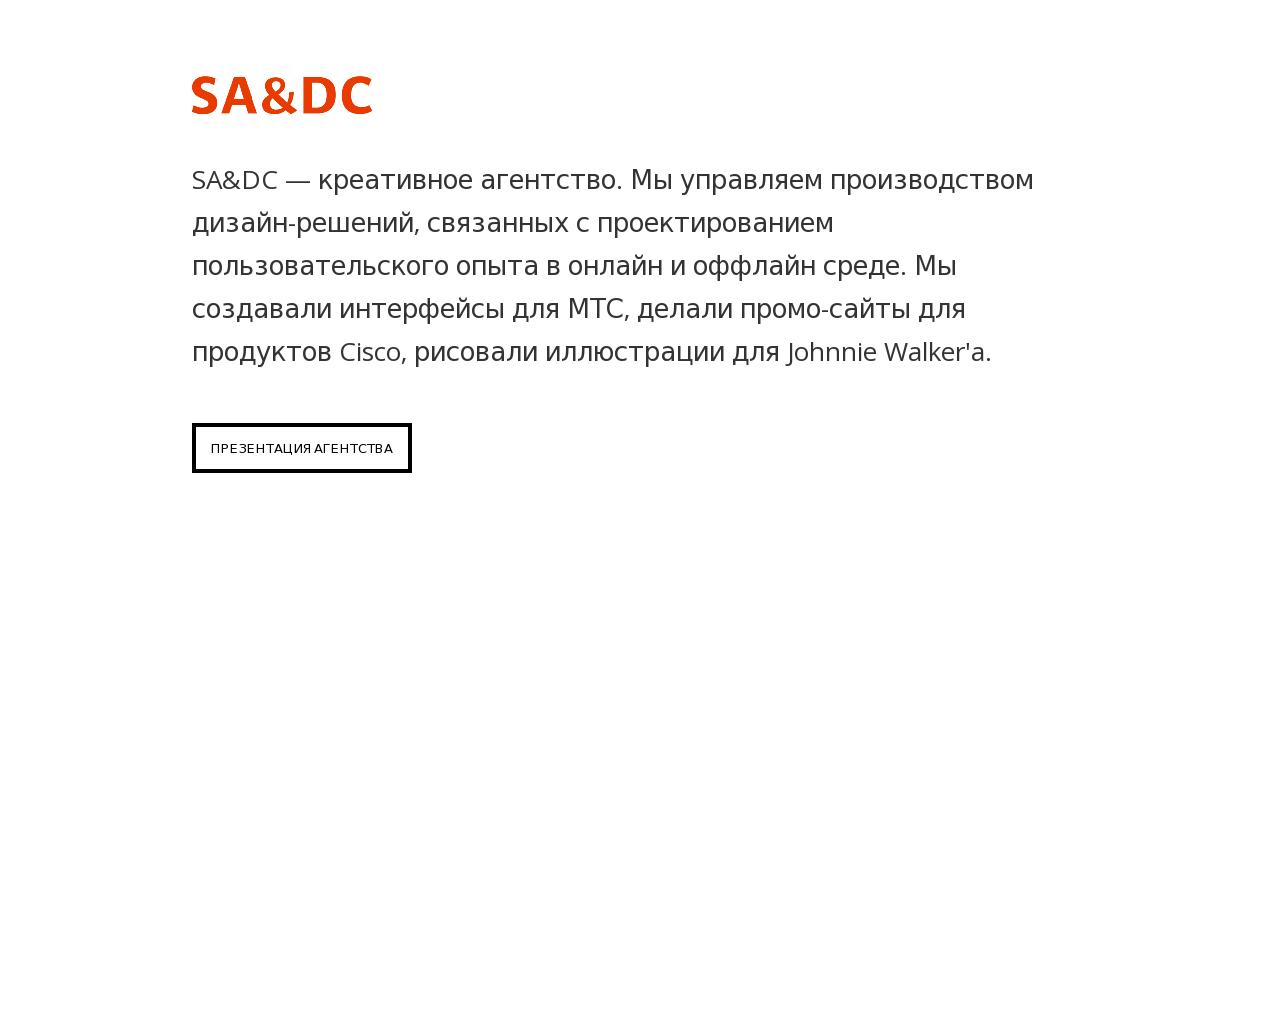 Изображение сайта sa-dc.ru в разрешении 1280x1024